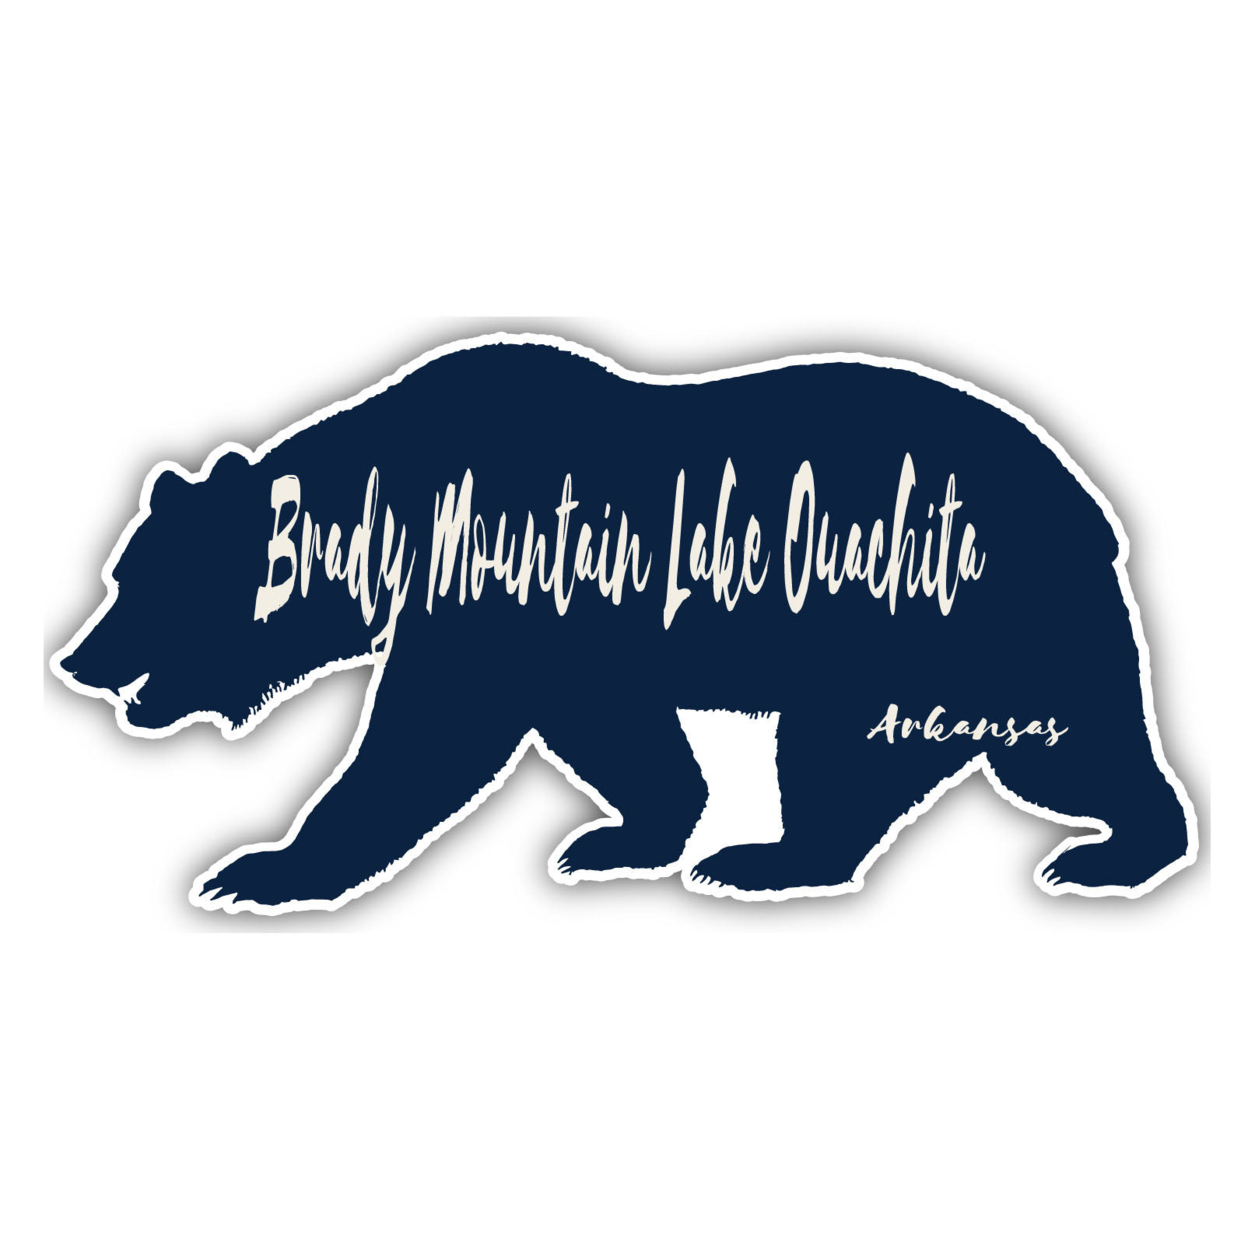 Brady Mountain Lake Ouachita Arkansas Souvenir Decorative Stickers (Choose Theme And Size) - 4-Pack, 2-Inch, Tent